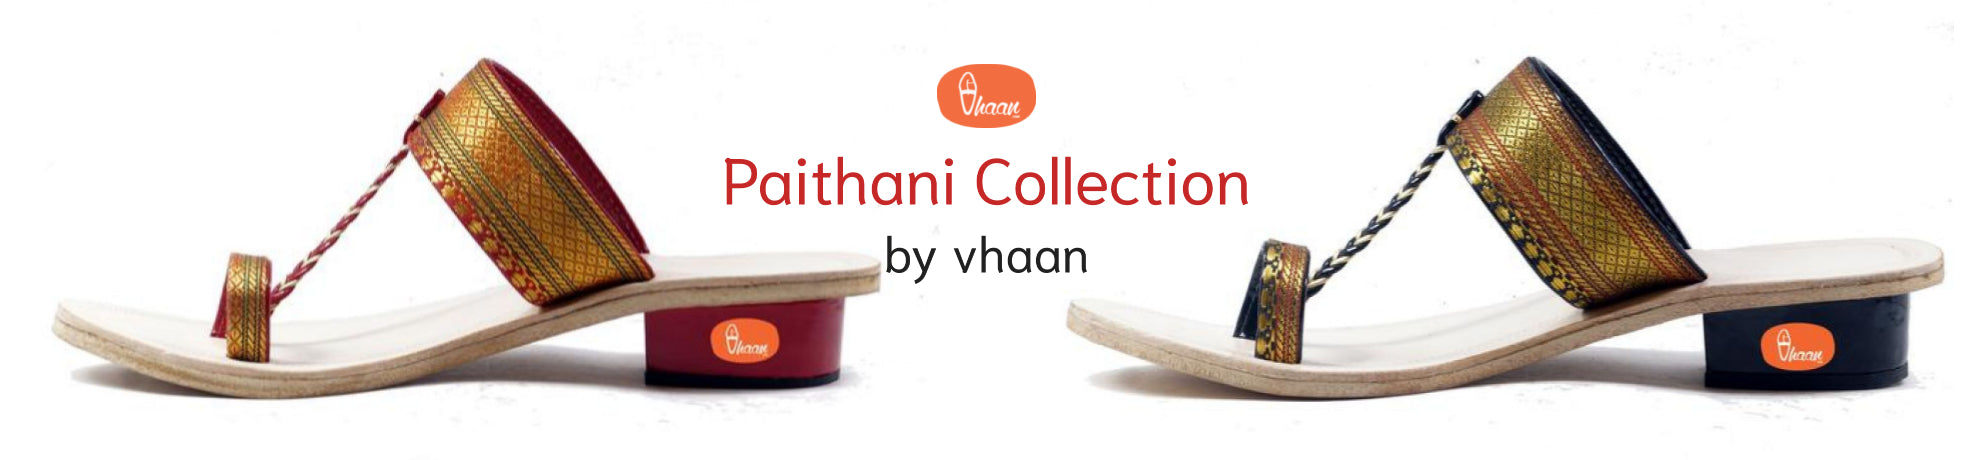 Paithani Collection